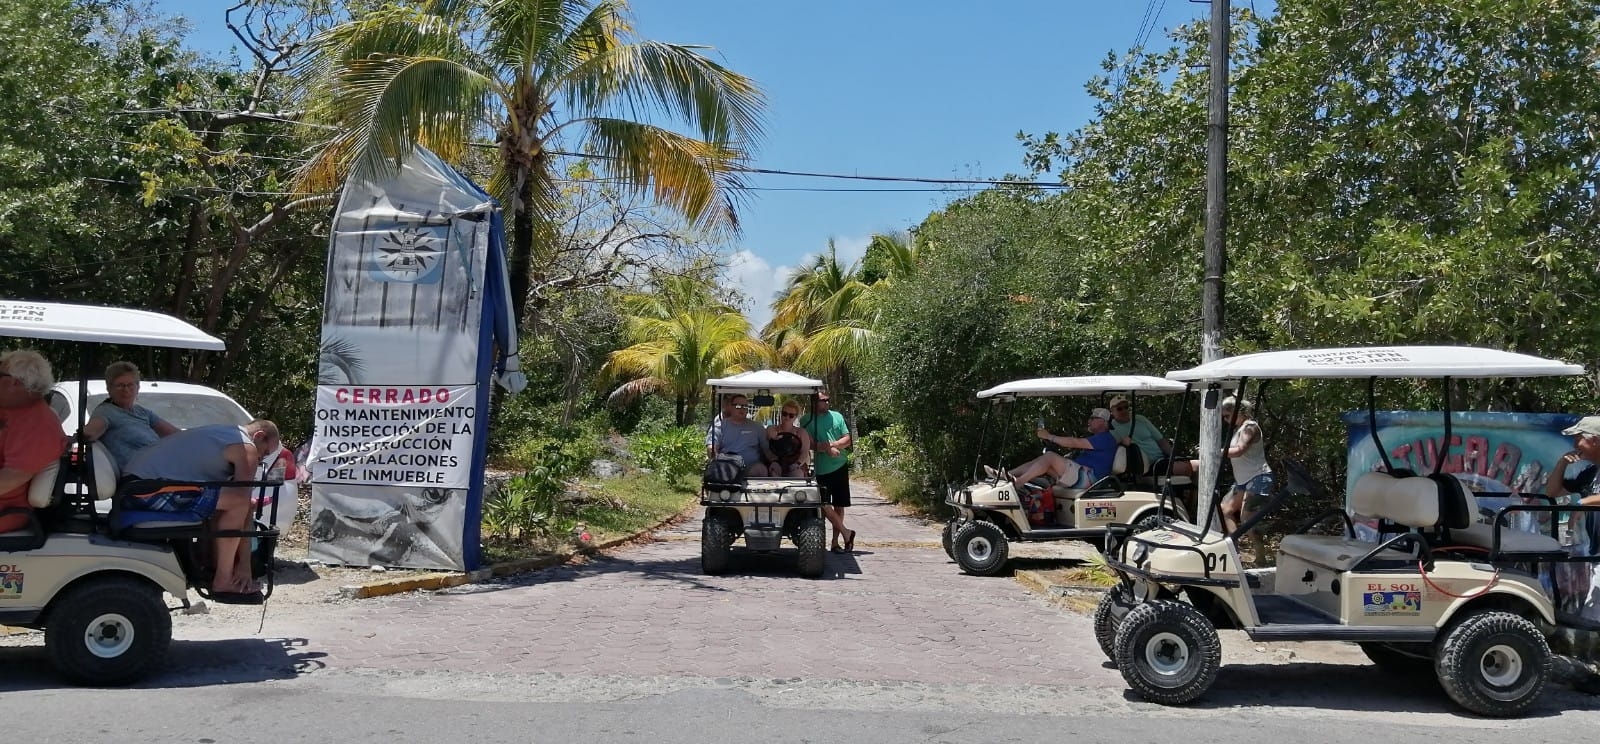 La Tortugranja en Isla Mujeres fue cerrada en septiembre del 2021, luego de que algunos colaboradores denunciaran irregularidades en su administración